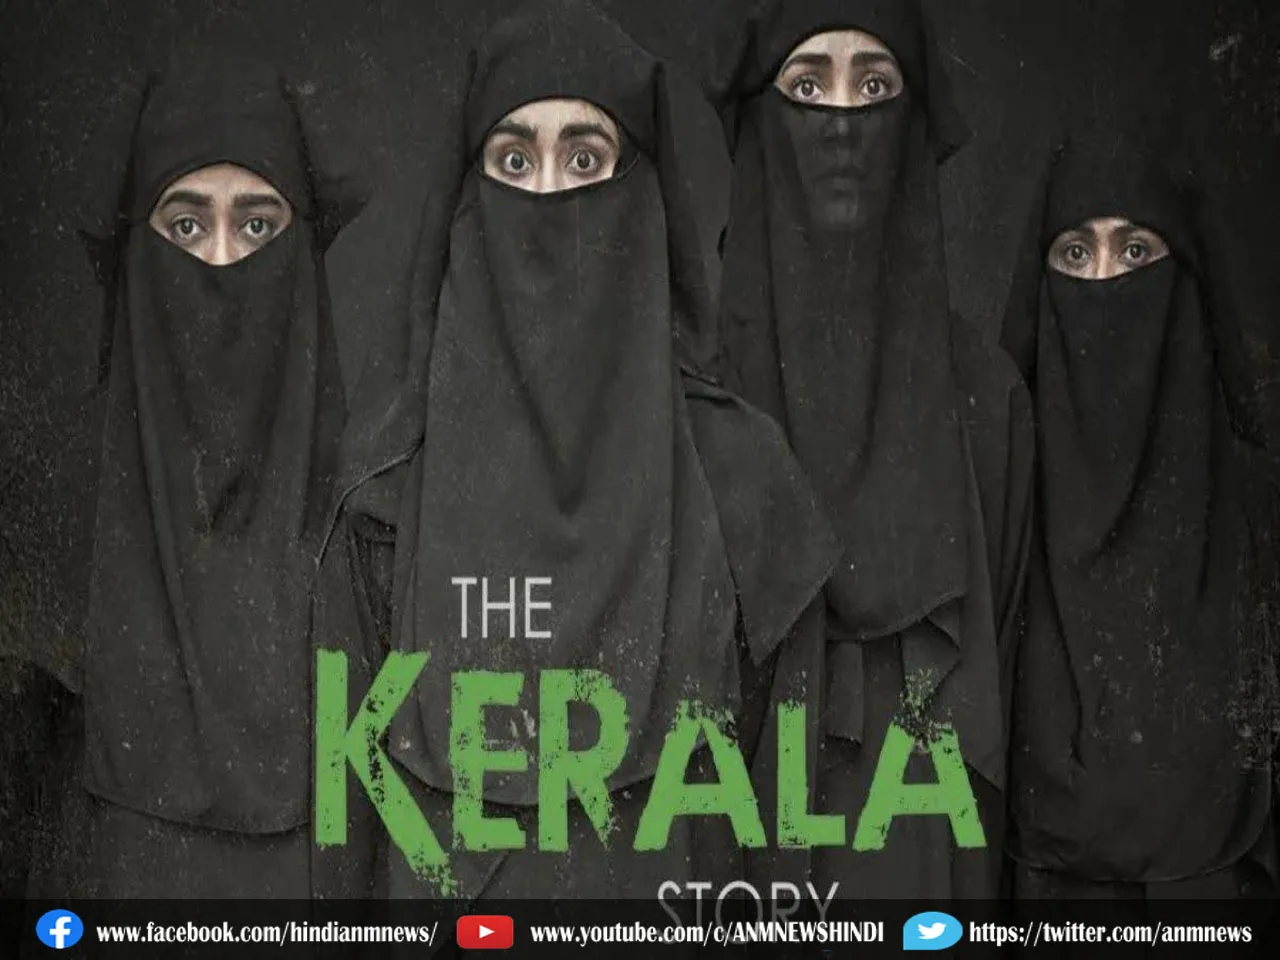 पश्चिम बंगाल के इस थियेटर में दिखेगा The Kerala Story